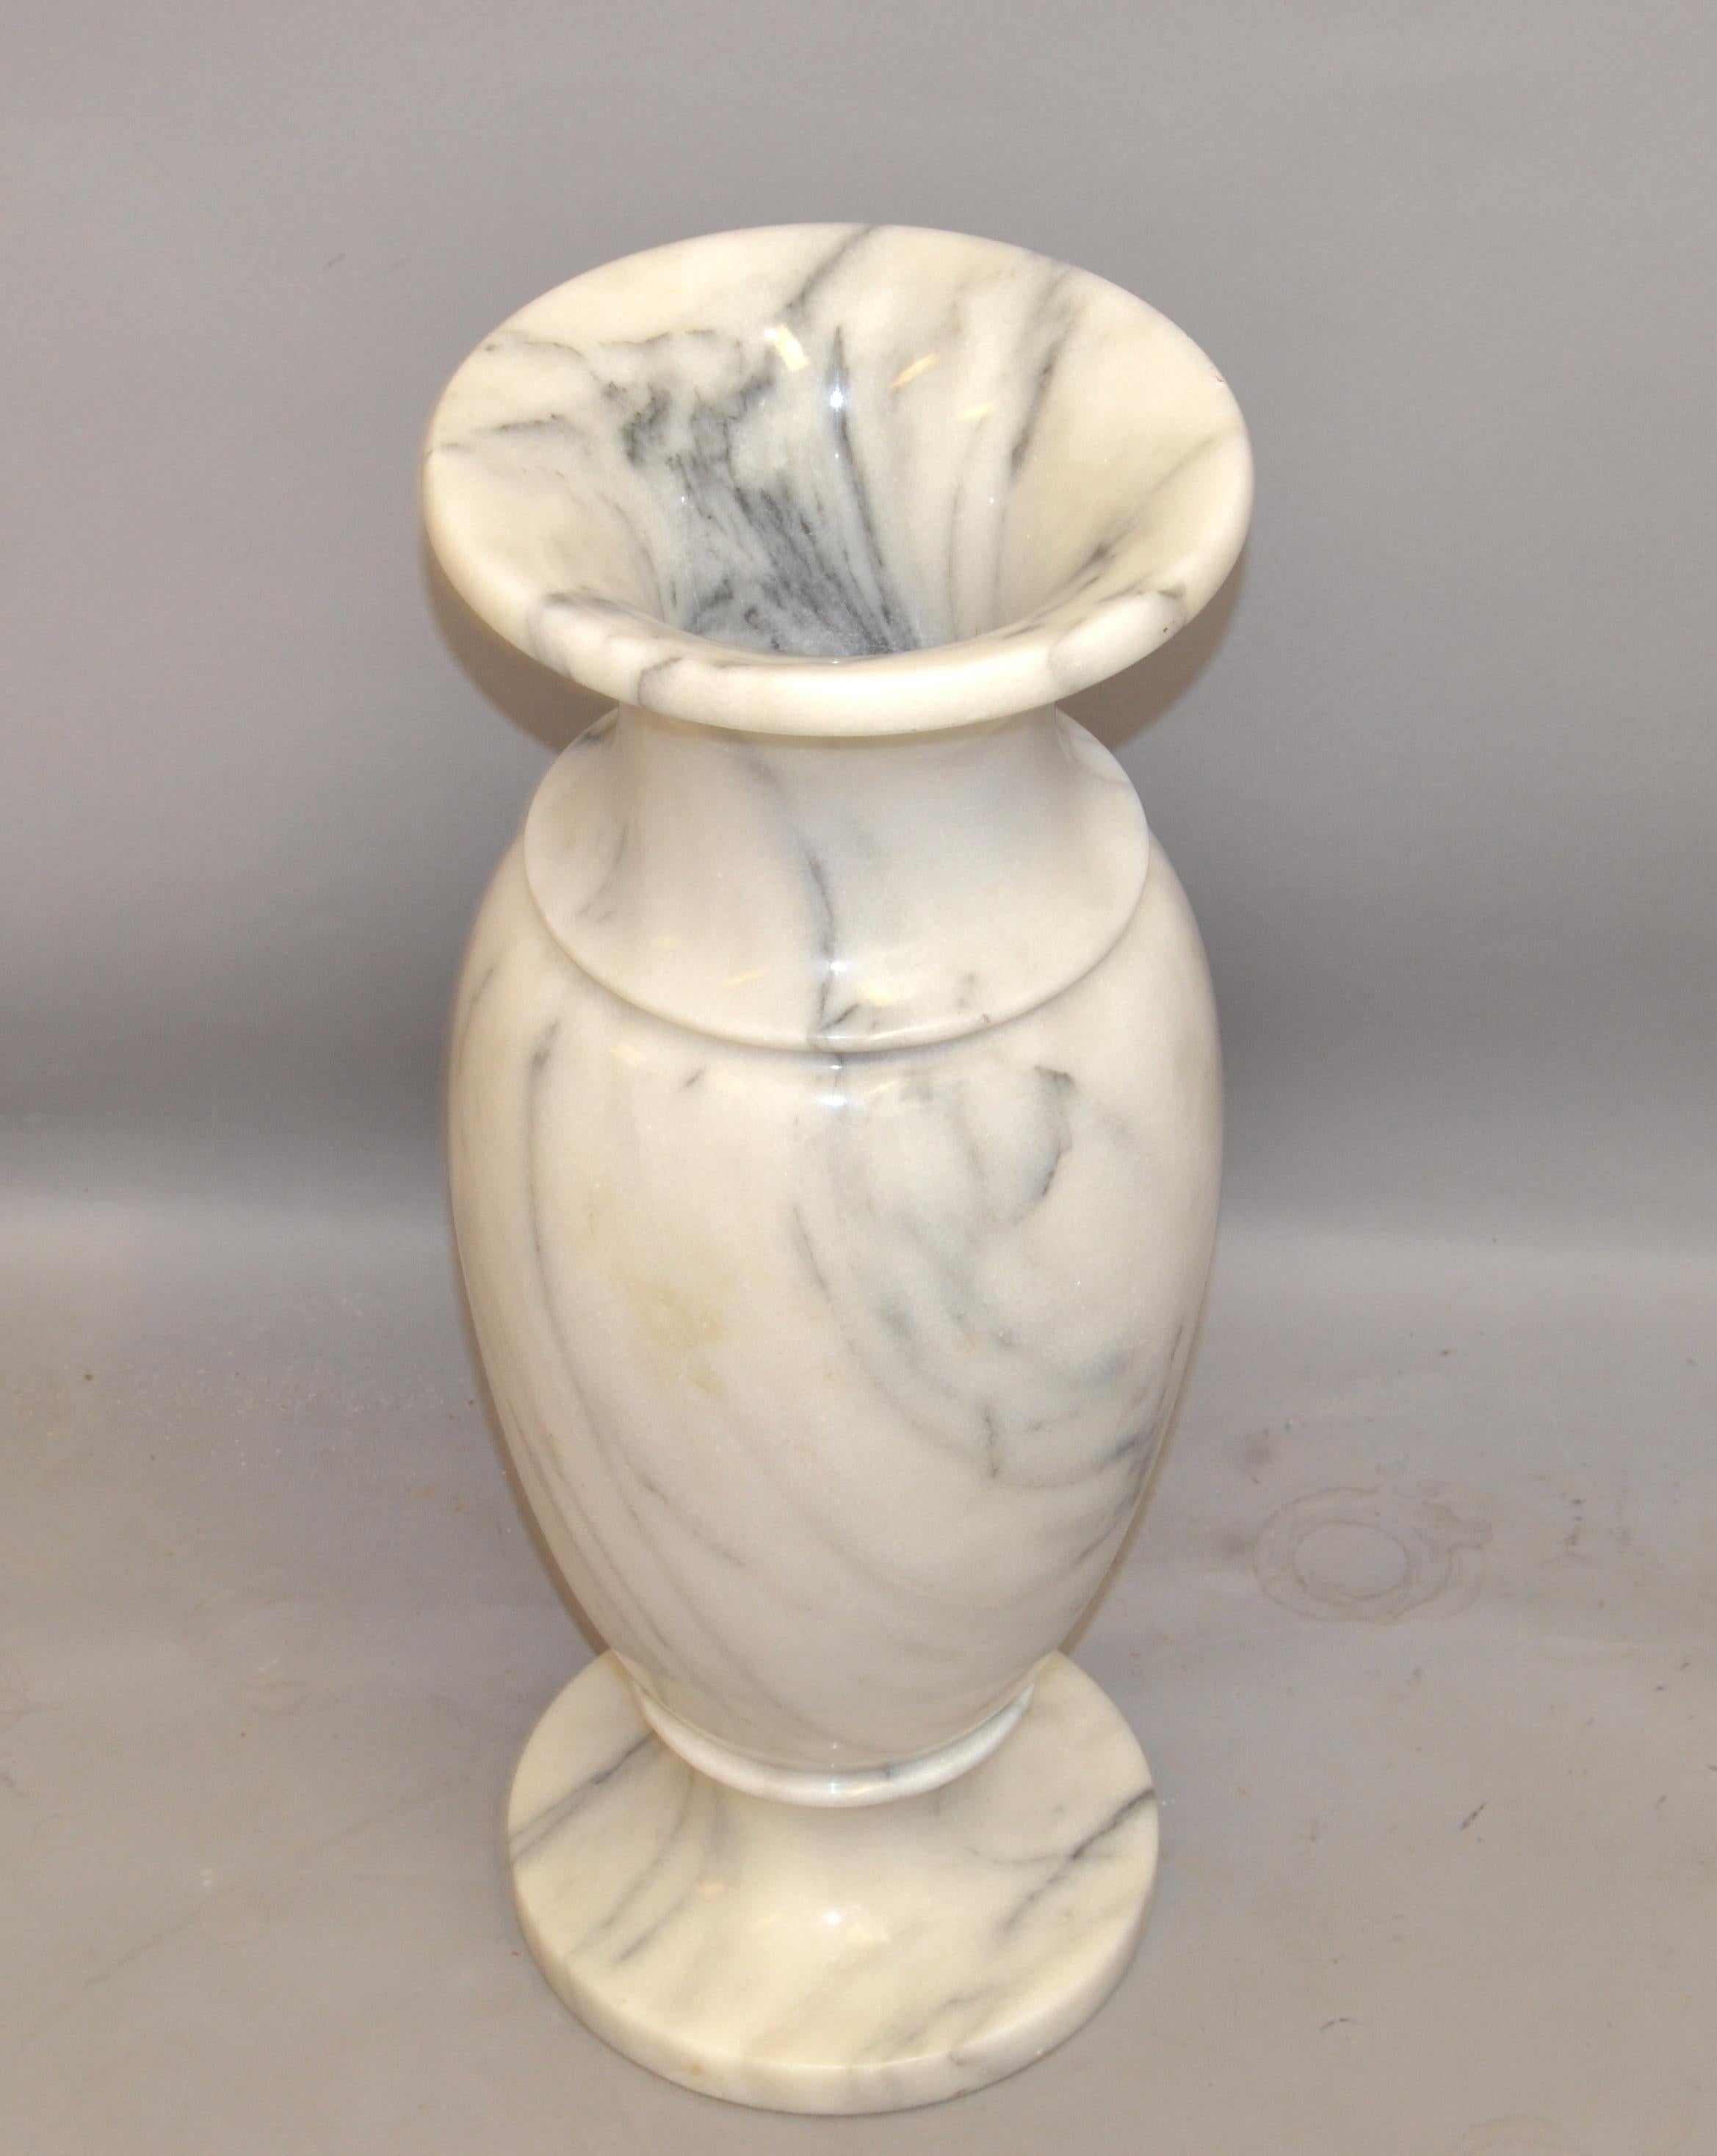 Style Art Déco 20ème siècle Vase Urne en marbre de Carrare blanc veiné sculpté à la main Italie.
Ce vase est très lourd et étonnamment travaillé, très décoratif sur une table italienne classique.
En très bon état vintage avec quelques légères usures